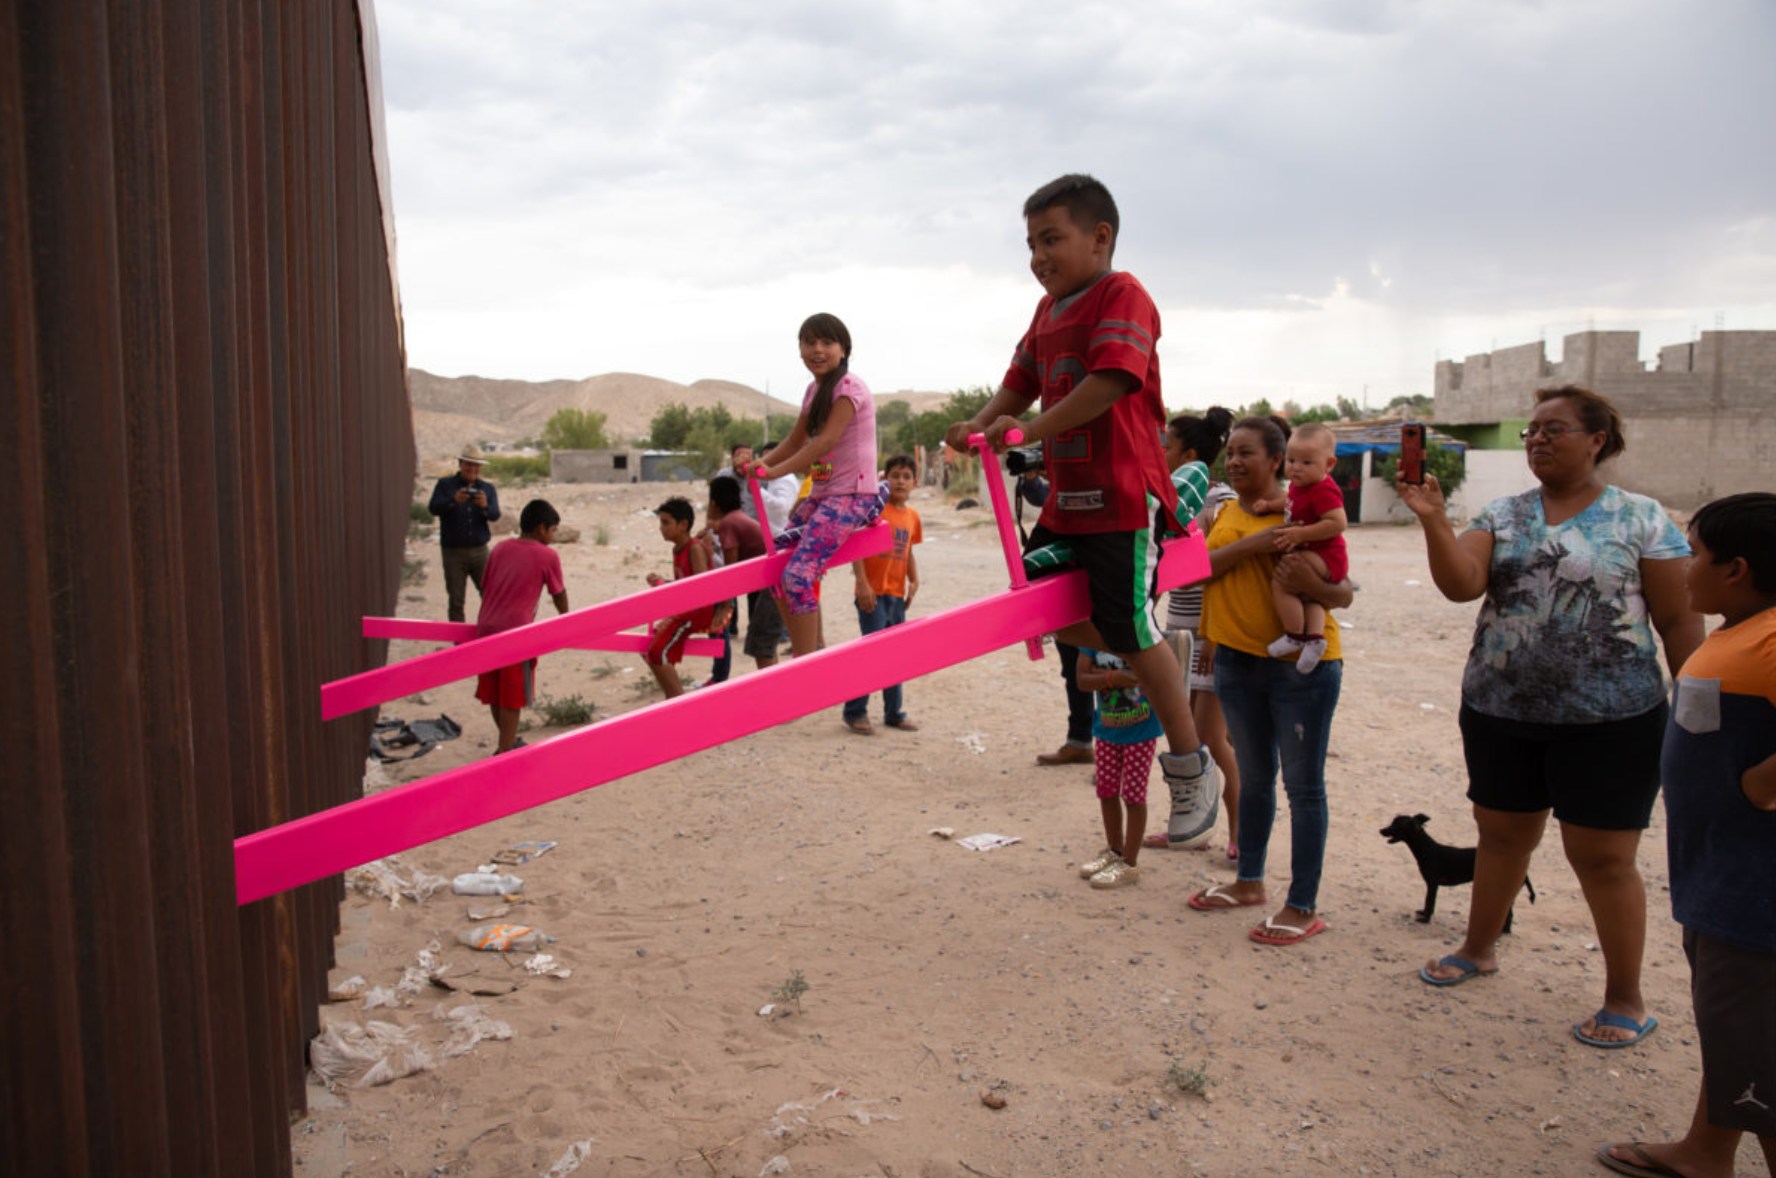 Как ярко-розовые качели на границе США и Мексики стали главной инсталляцией года